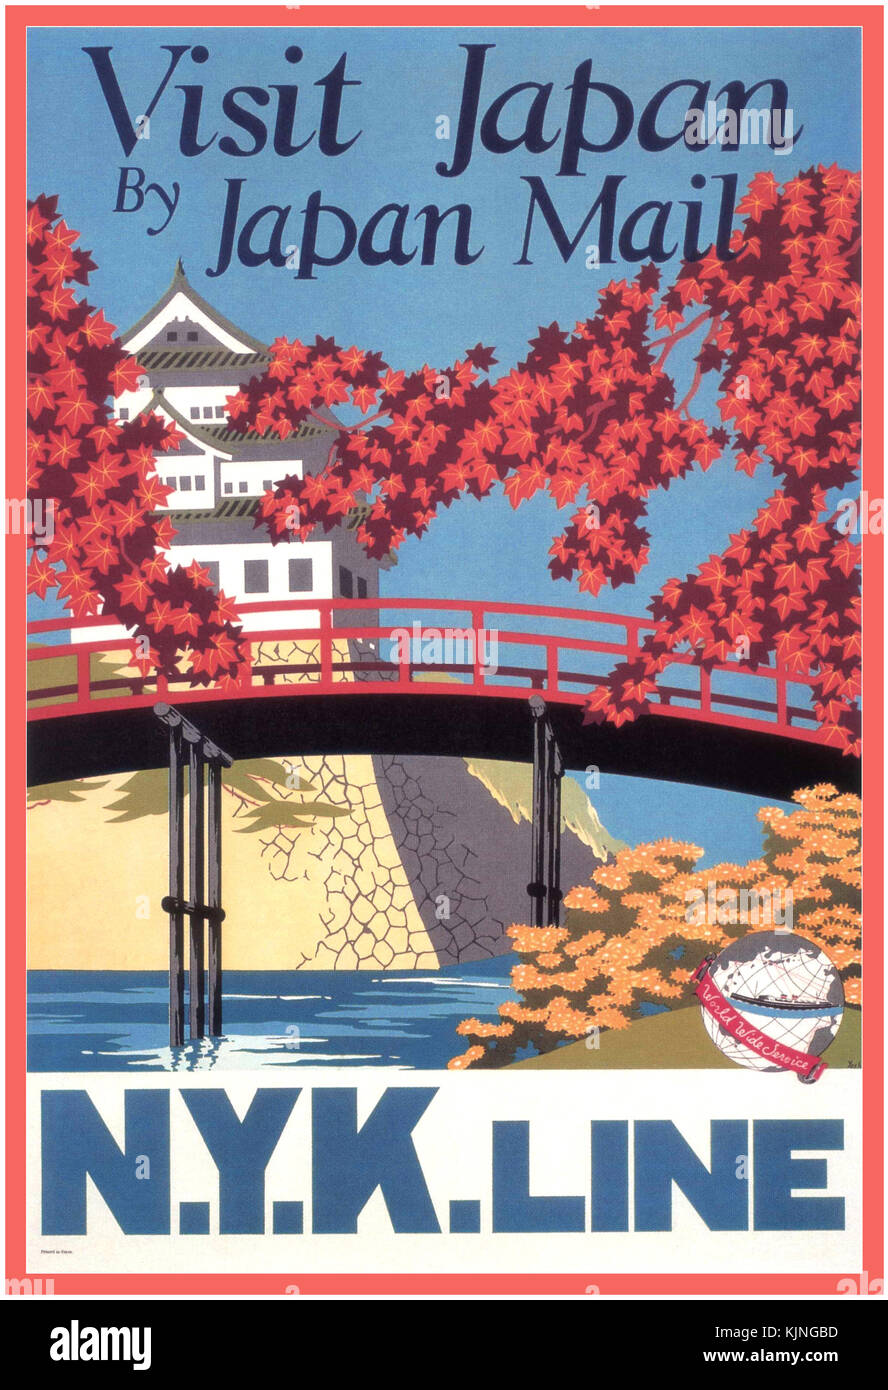 Vintage poster di viaggio degli anni trenta per linea N.Y.K in Giappone. Il palazzo imperiale a Tokyo in autunno "in visita in Giappone da Japan Mail N.Y.K. Linea." illustrata da Yoshi, circa 1935. Foto Stock